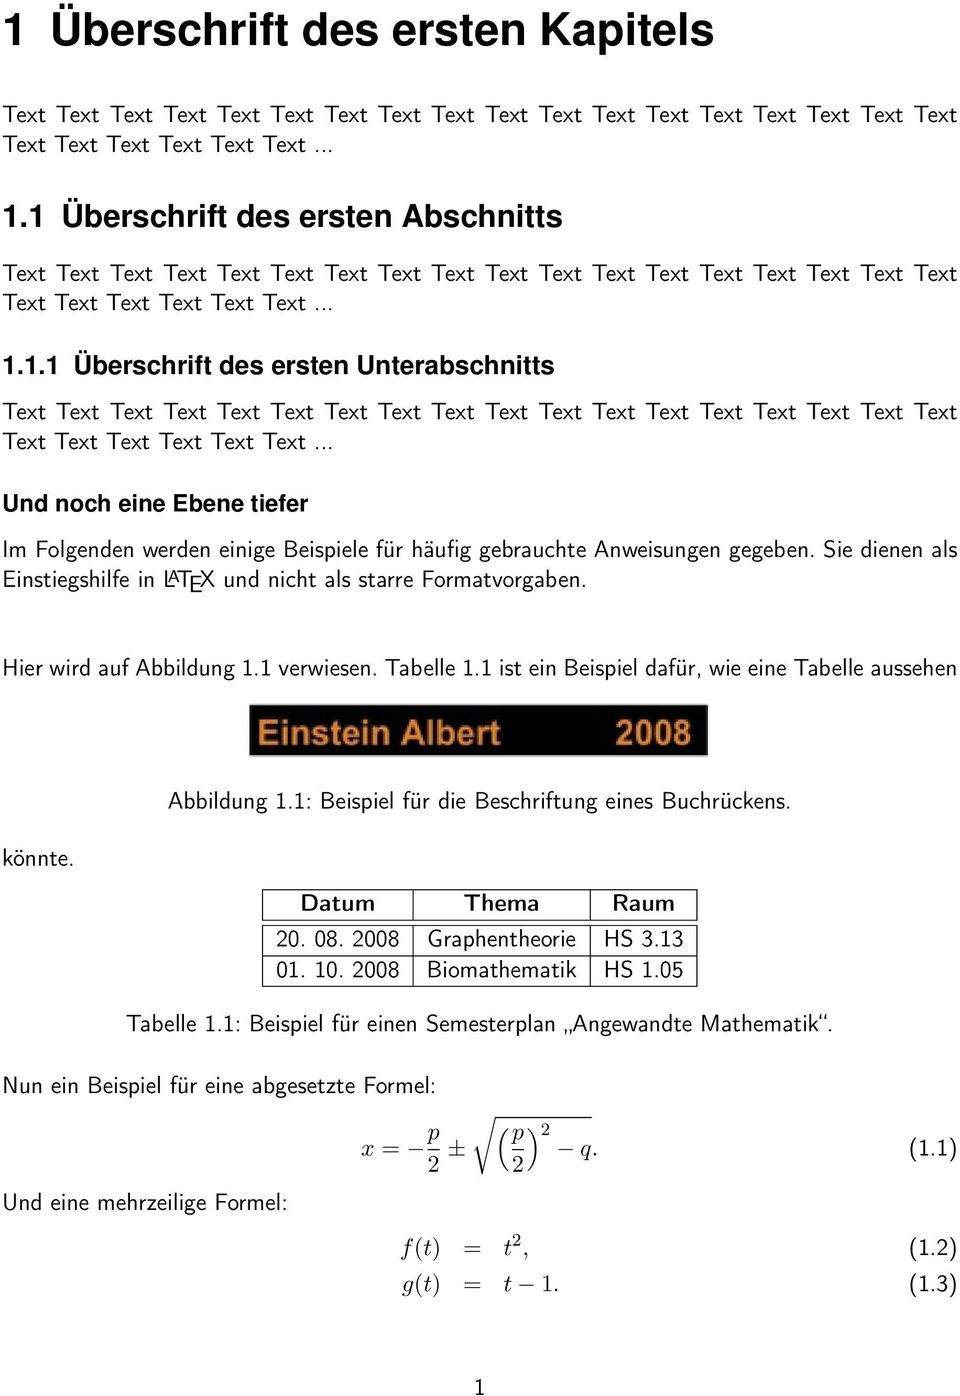 Abbildung 1.1: Beispiel für die Beschriftung eines Buchrückens. Datum Thema Raum 20. 08. 2008 Graphentheorie HS 3.13 01. 10. 2008 Biomathematik HS 1.05 Tabelle 1.